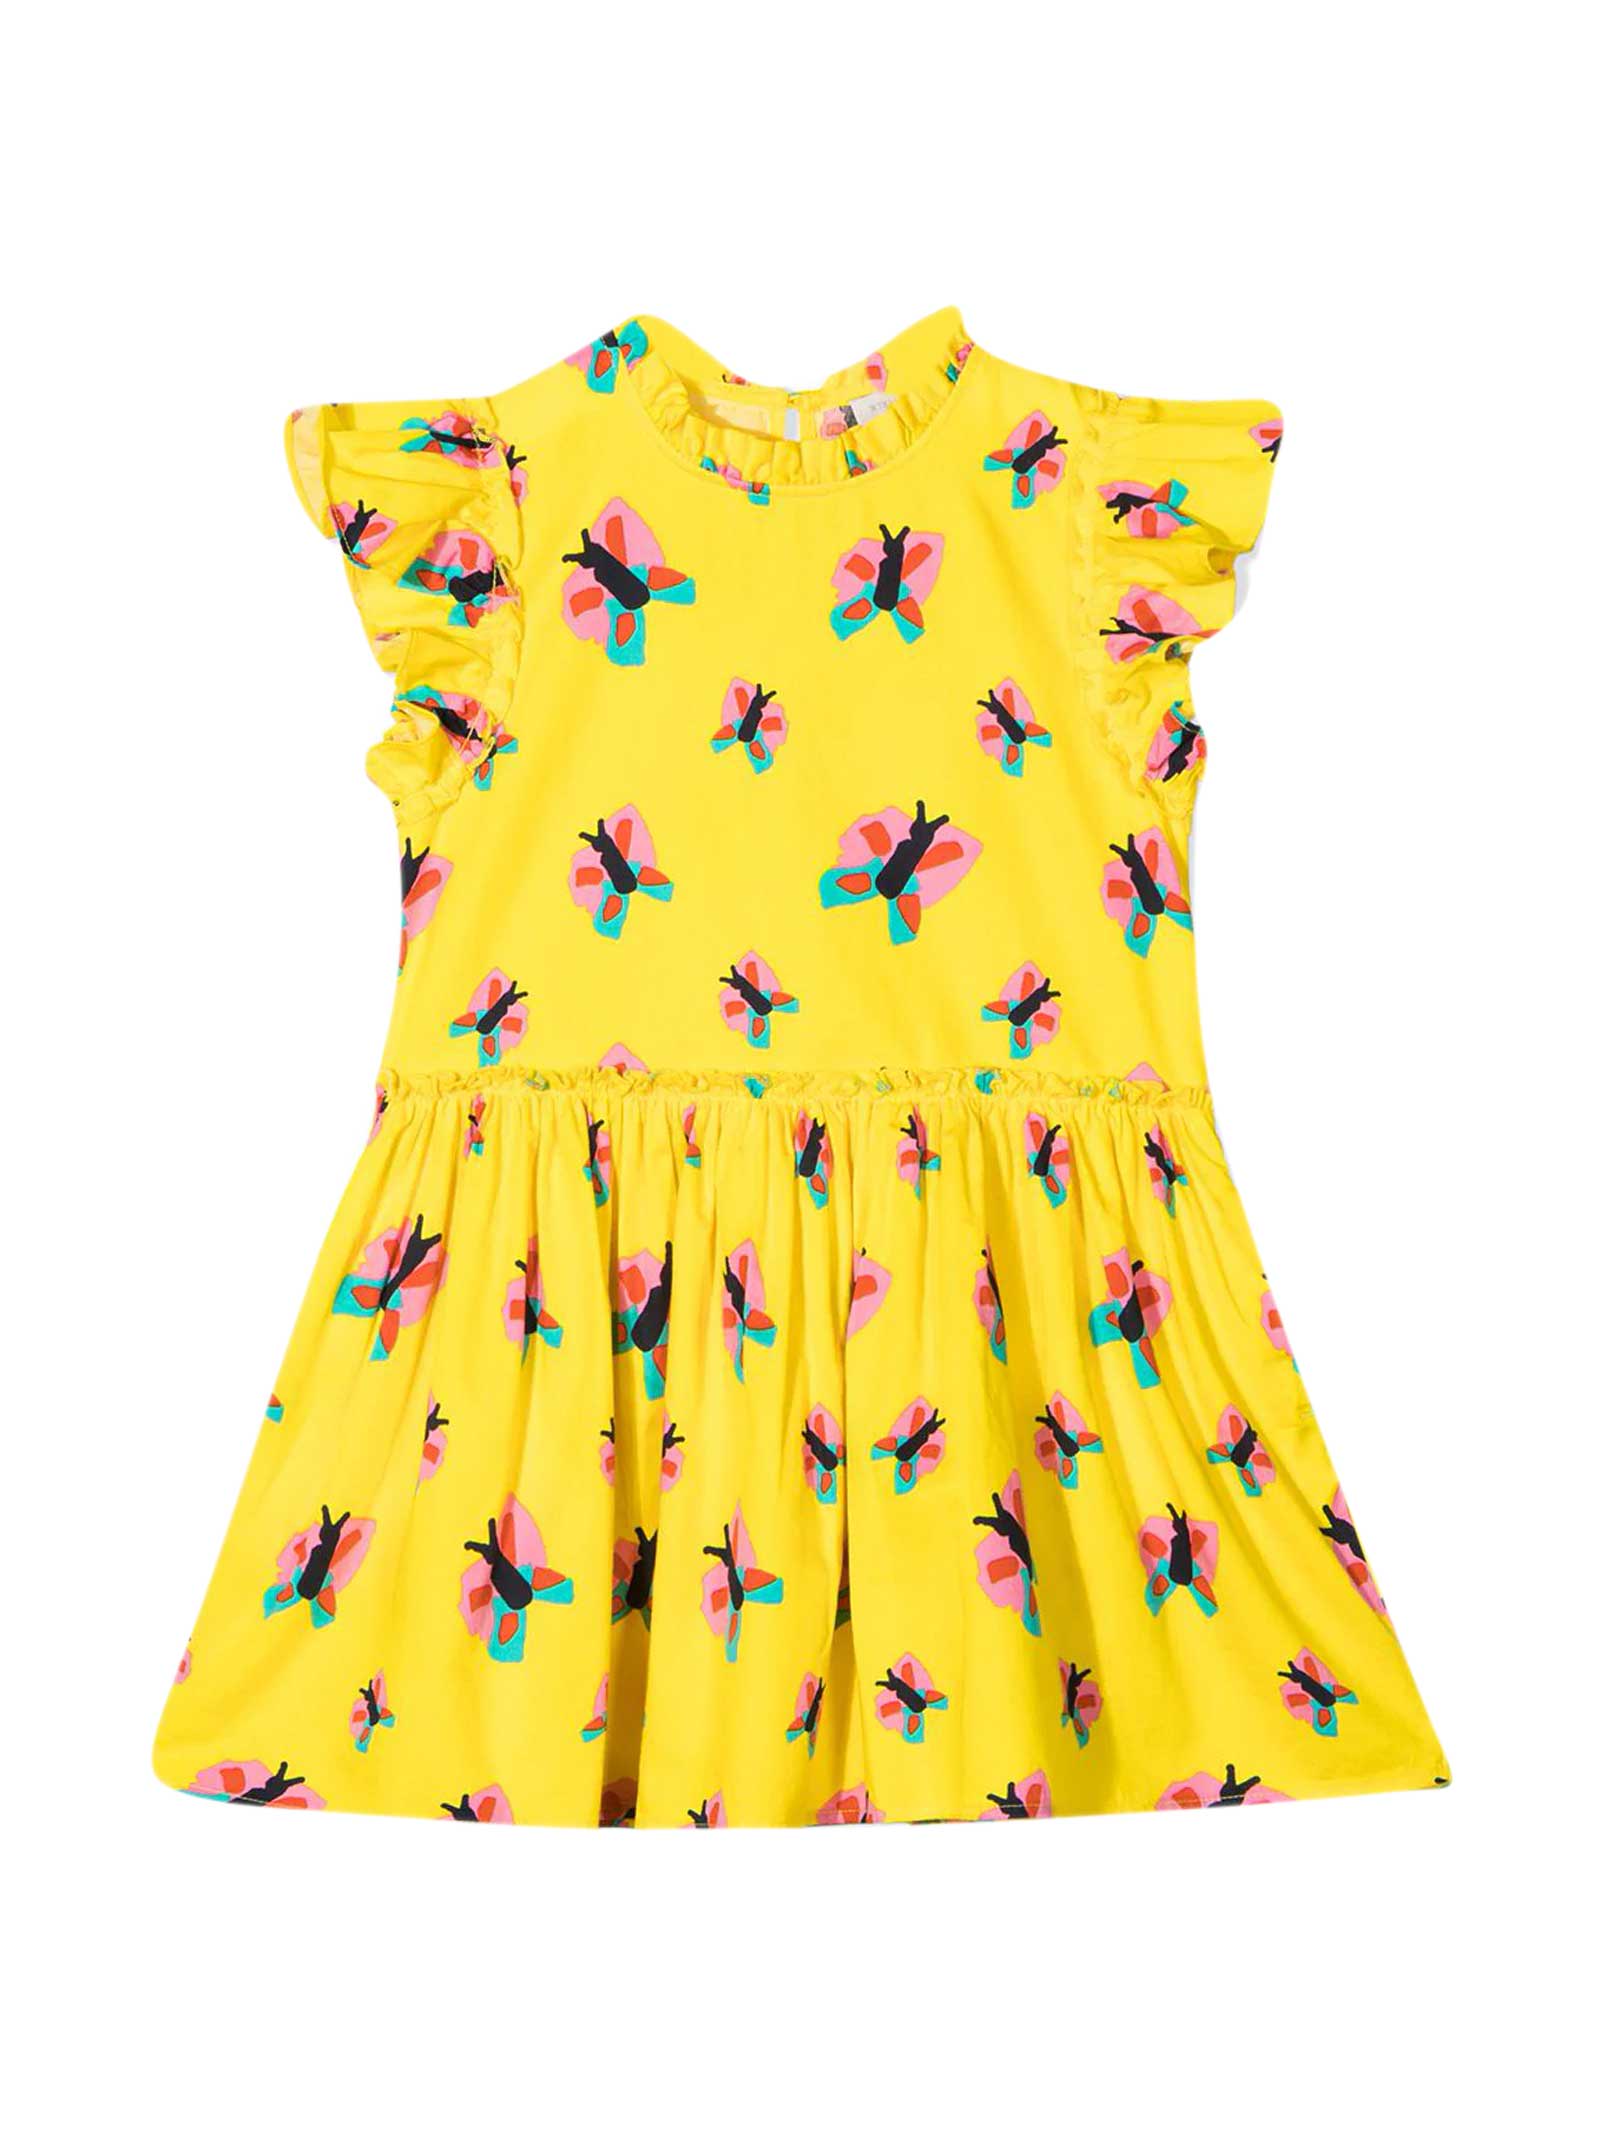 Stella McCartney Kids Yellow Dress